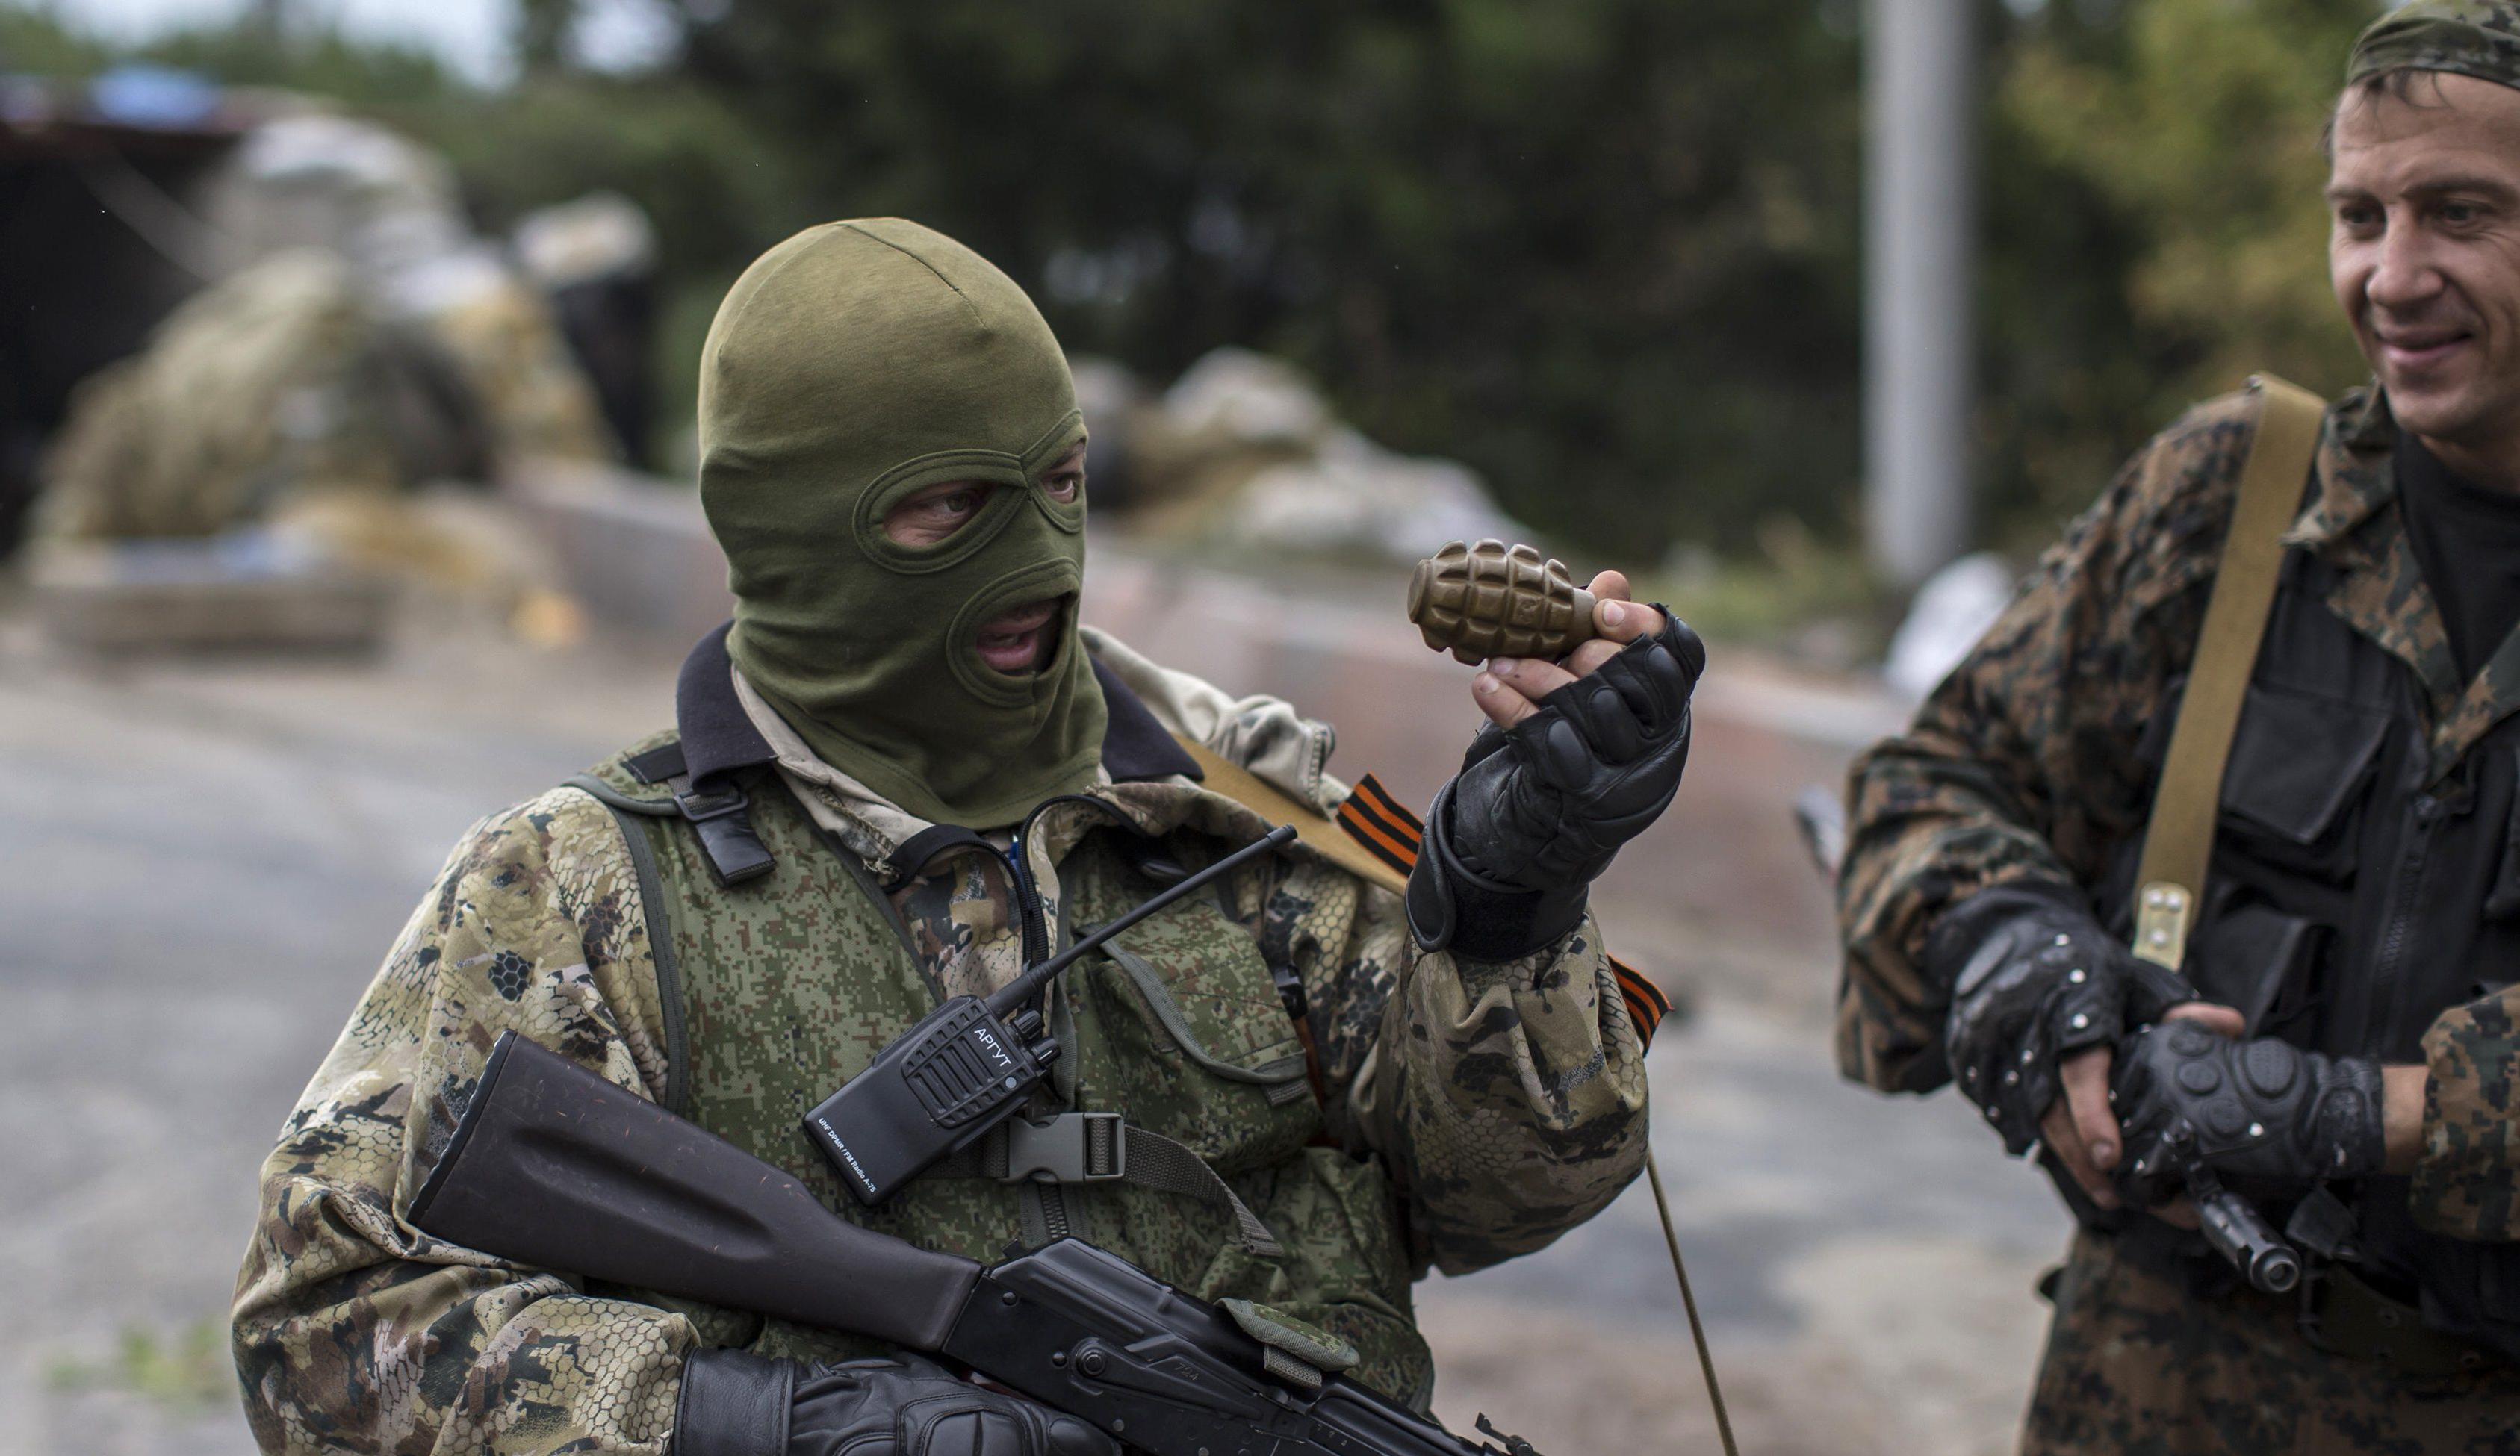 Бандформирования "ЛДНР" совершили 49 вооруженных провокаций за сутки: в ходе ожесточенных атак ранены шестеро бойцов ВСУ